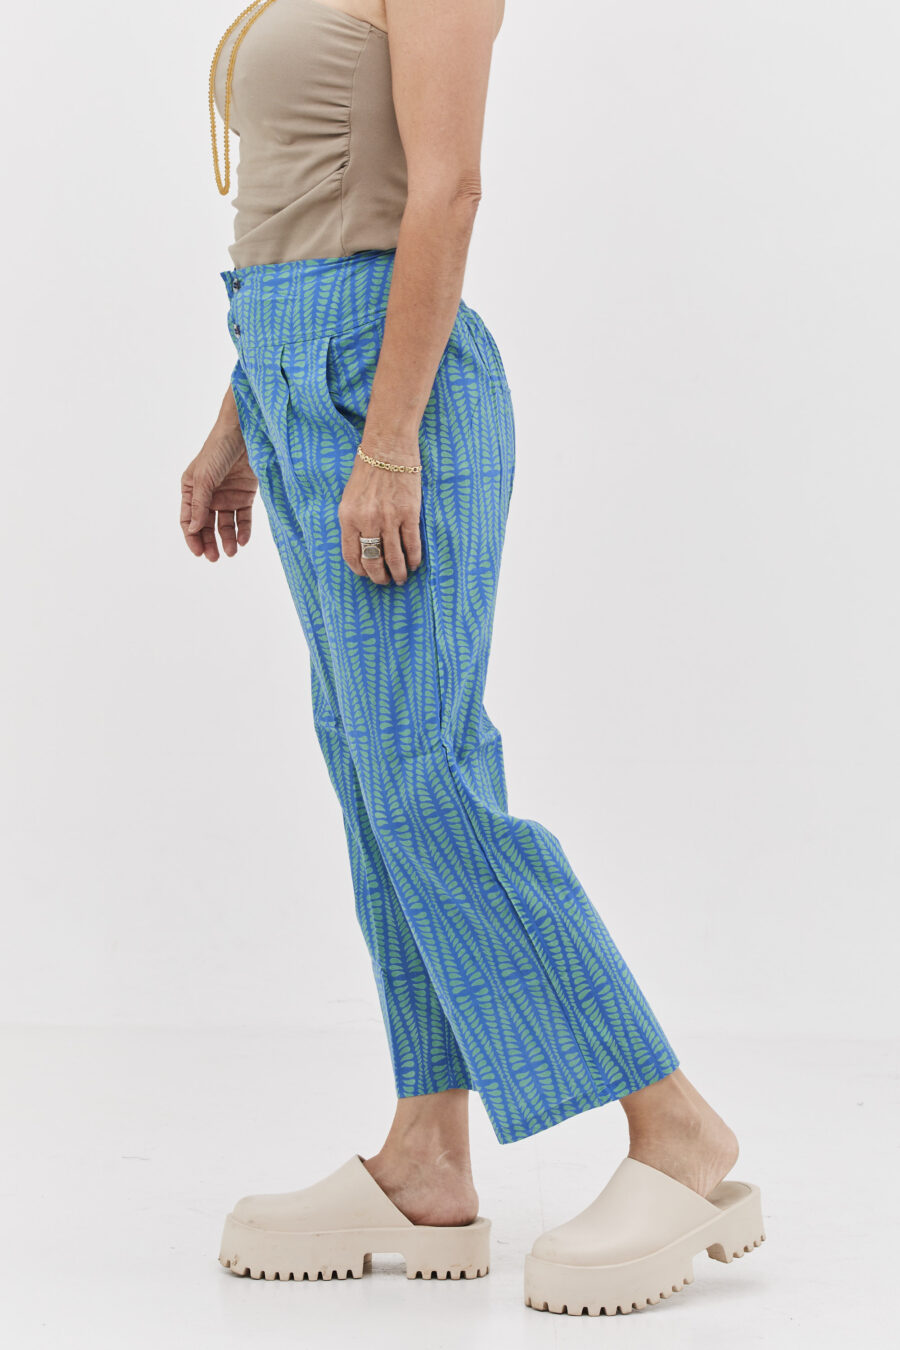 מכנסי ג'ד | מכנסיים מעוצבים ונוחים של קומפורט זון בוטיק - הדפס אגם כחול, מכנסיים כחולים עם הדפס גיאומטרי בצבע ירוק בהיר.